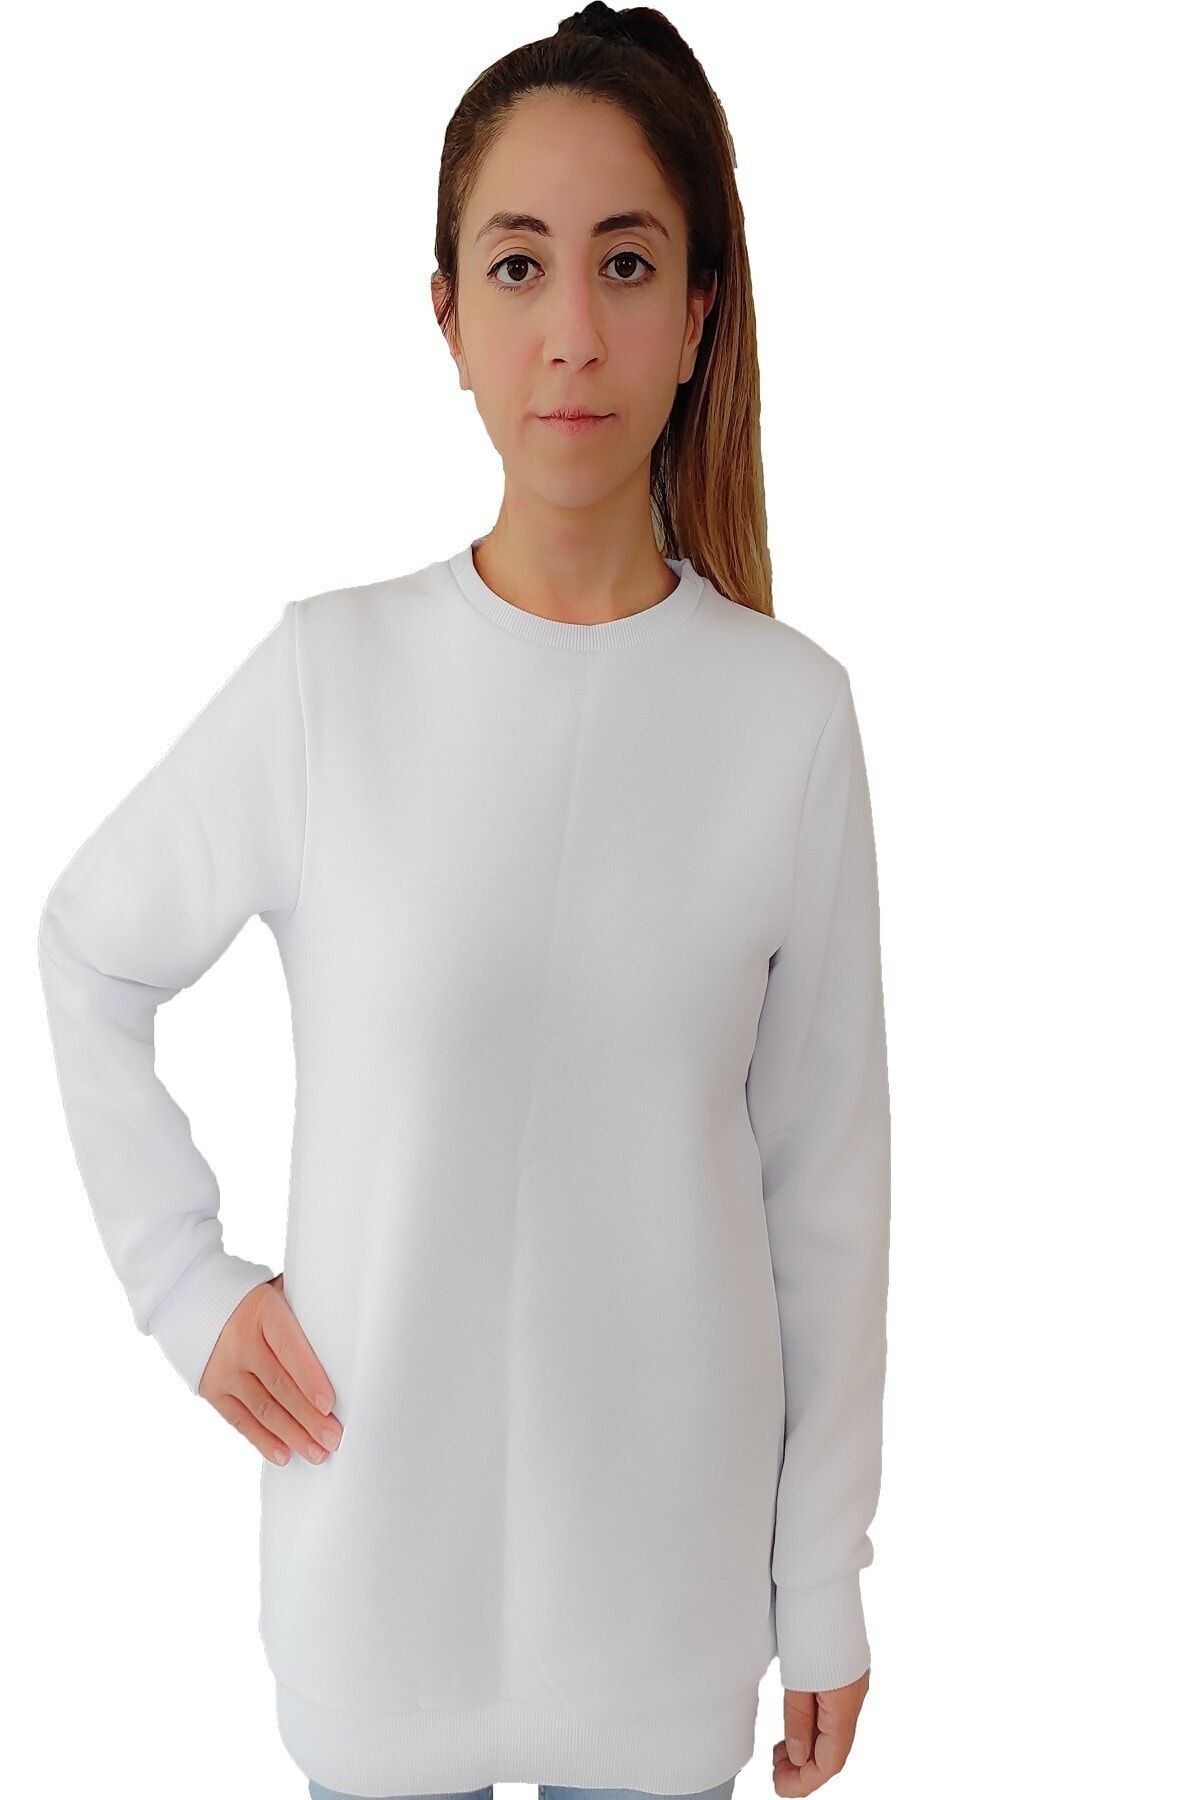 Tshigo Kadın Beyaz Kapşonsuz T-shirt